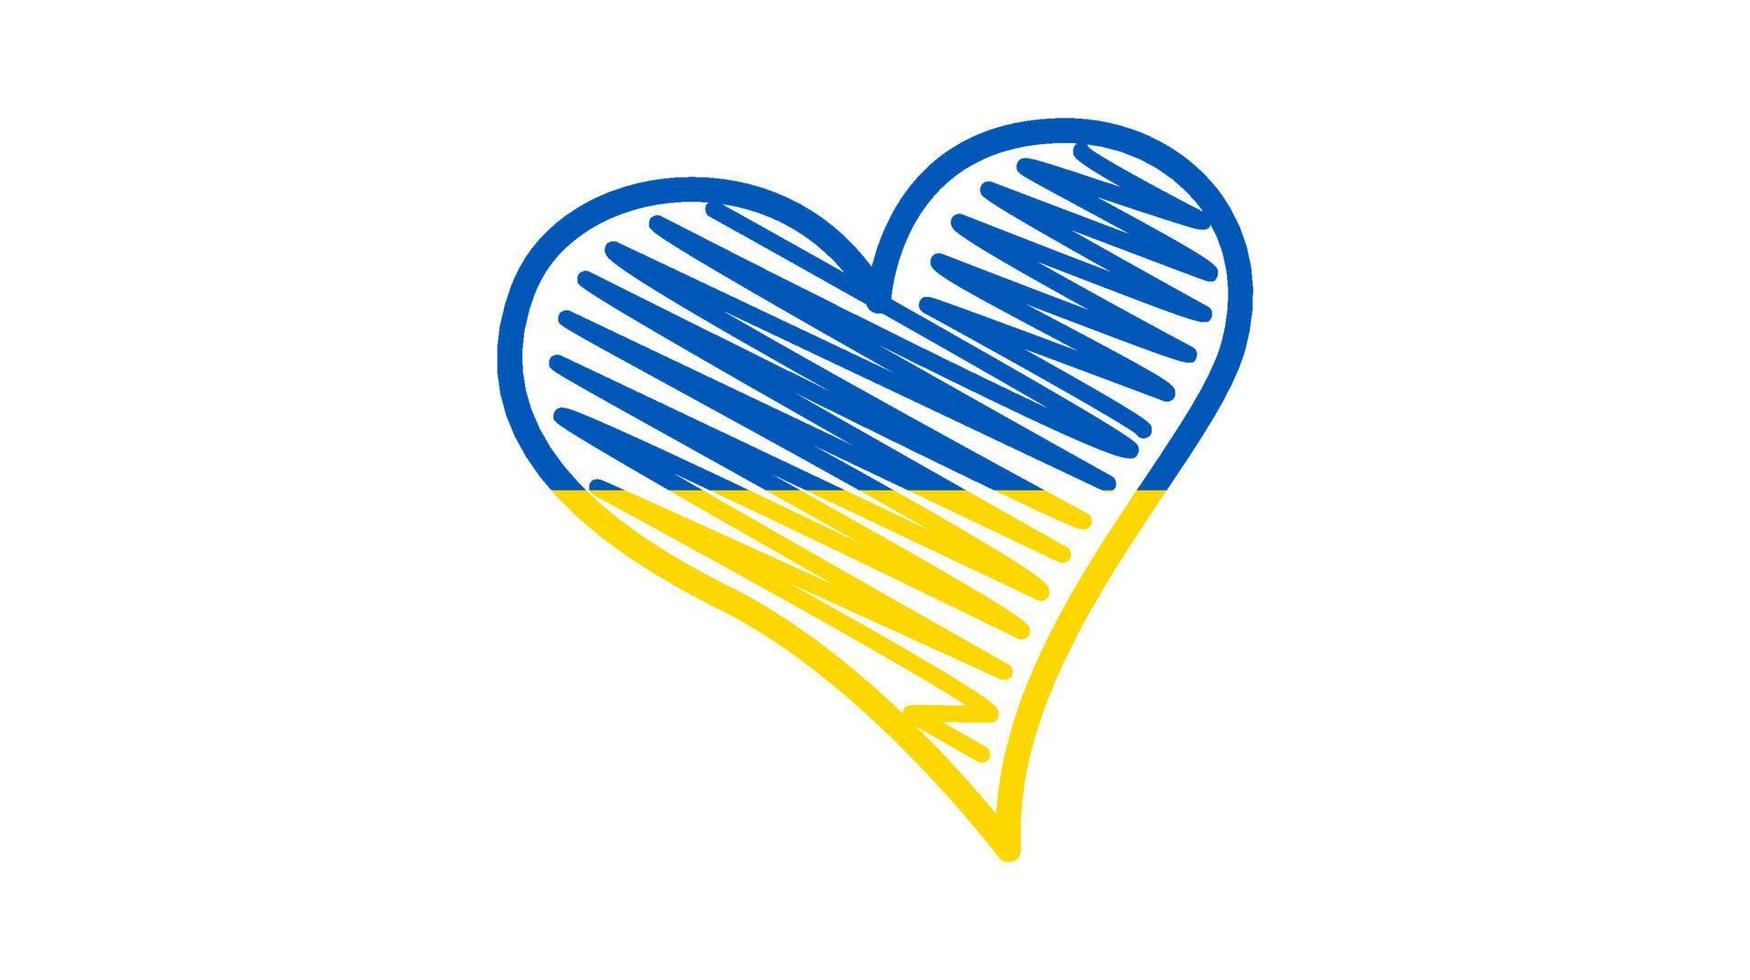 corazón en colores ucranianos vector